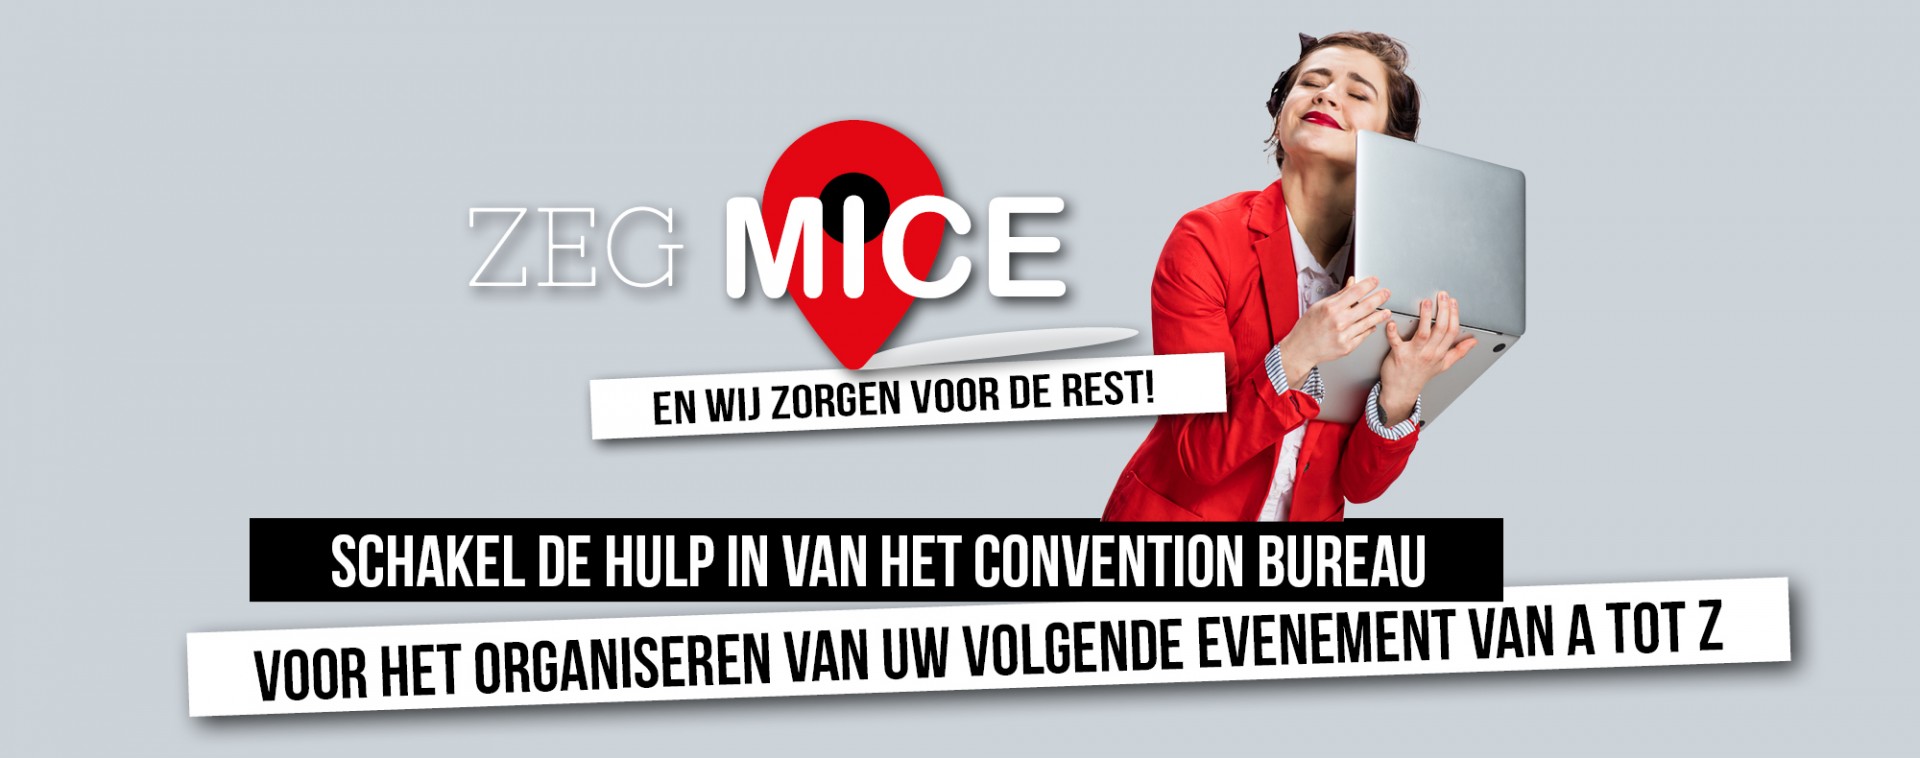 Zeg MICE - Uw evenement van A tot Z - Liège-Spa Businessland | © Getty Images